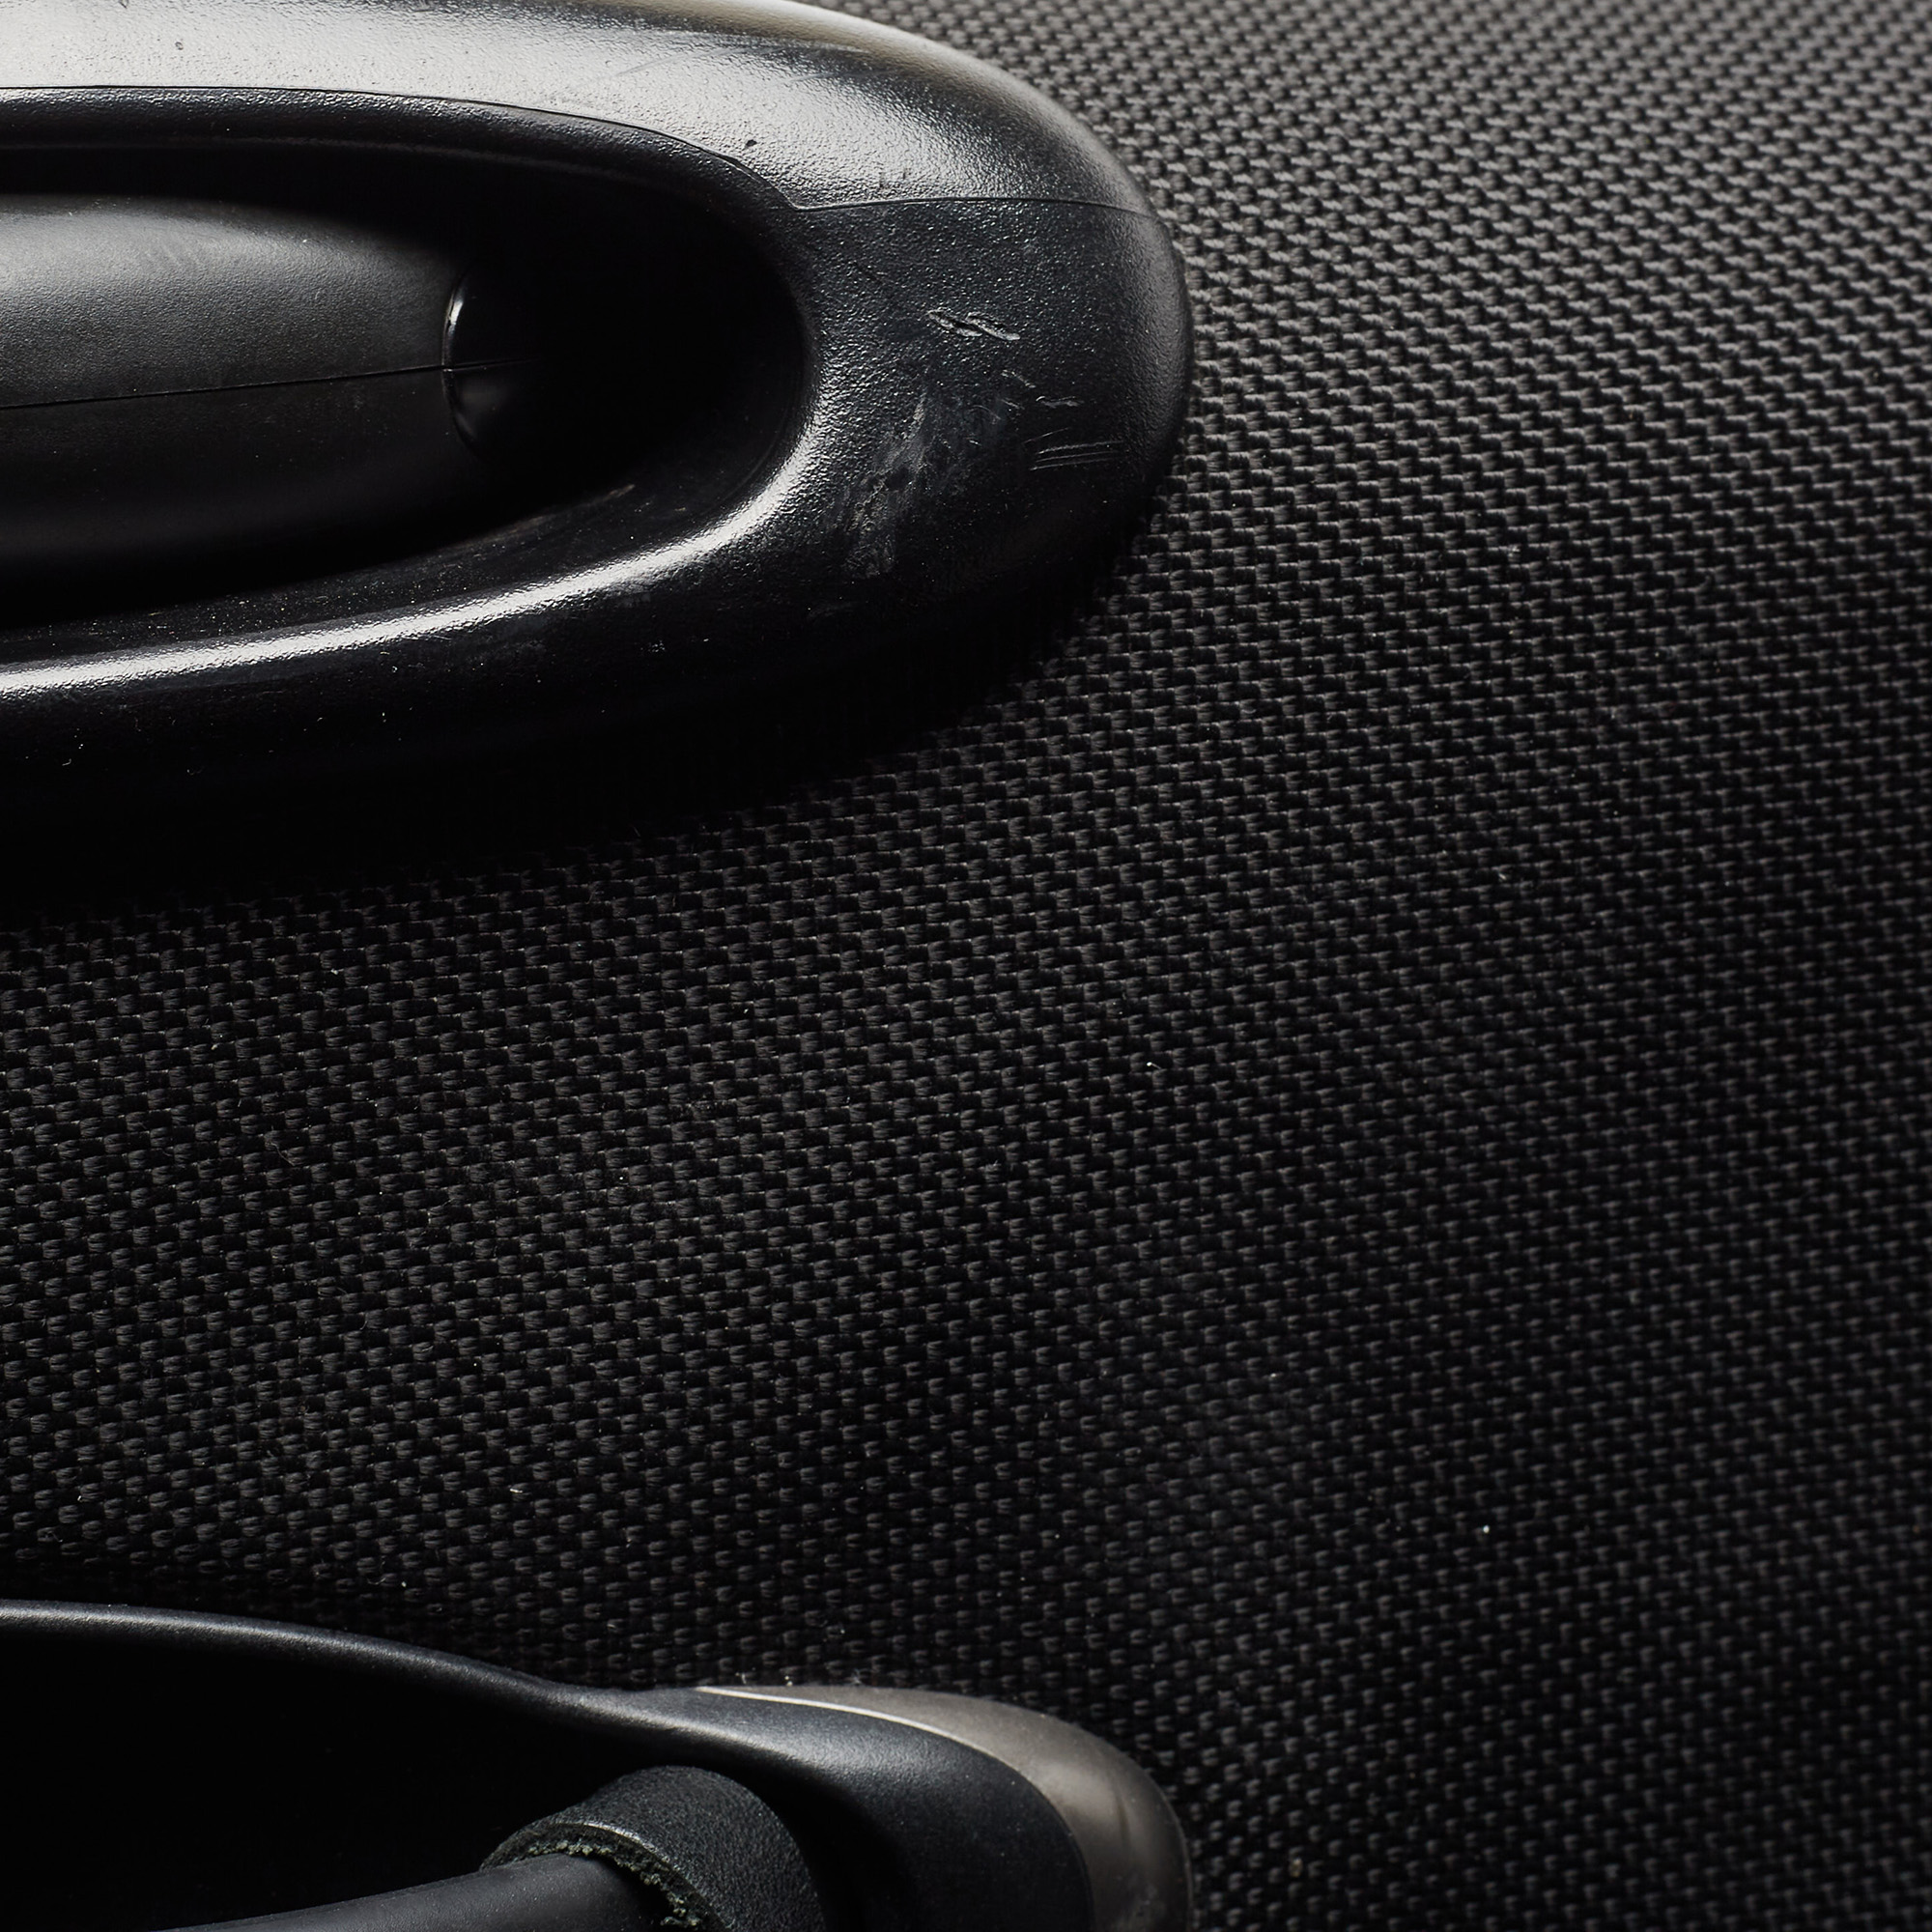 Tumi Black Ballistic Nylon 2 Wheeled Generation 4 Expandable Trip Luggage